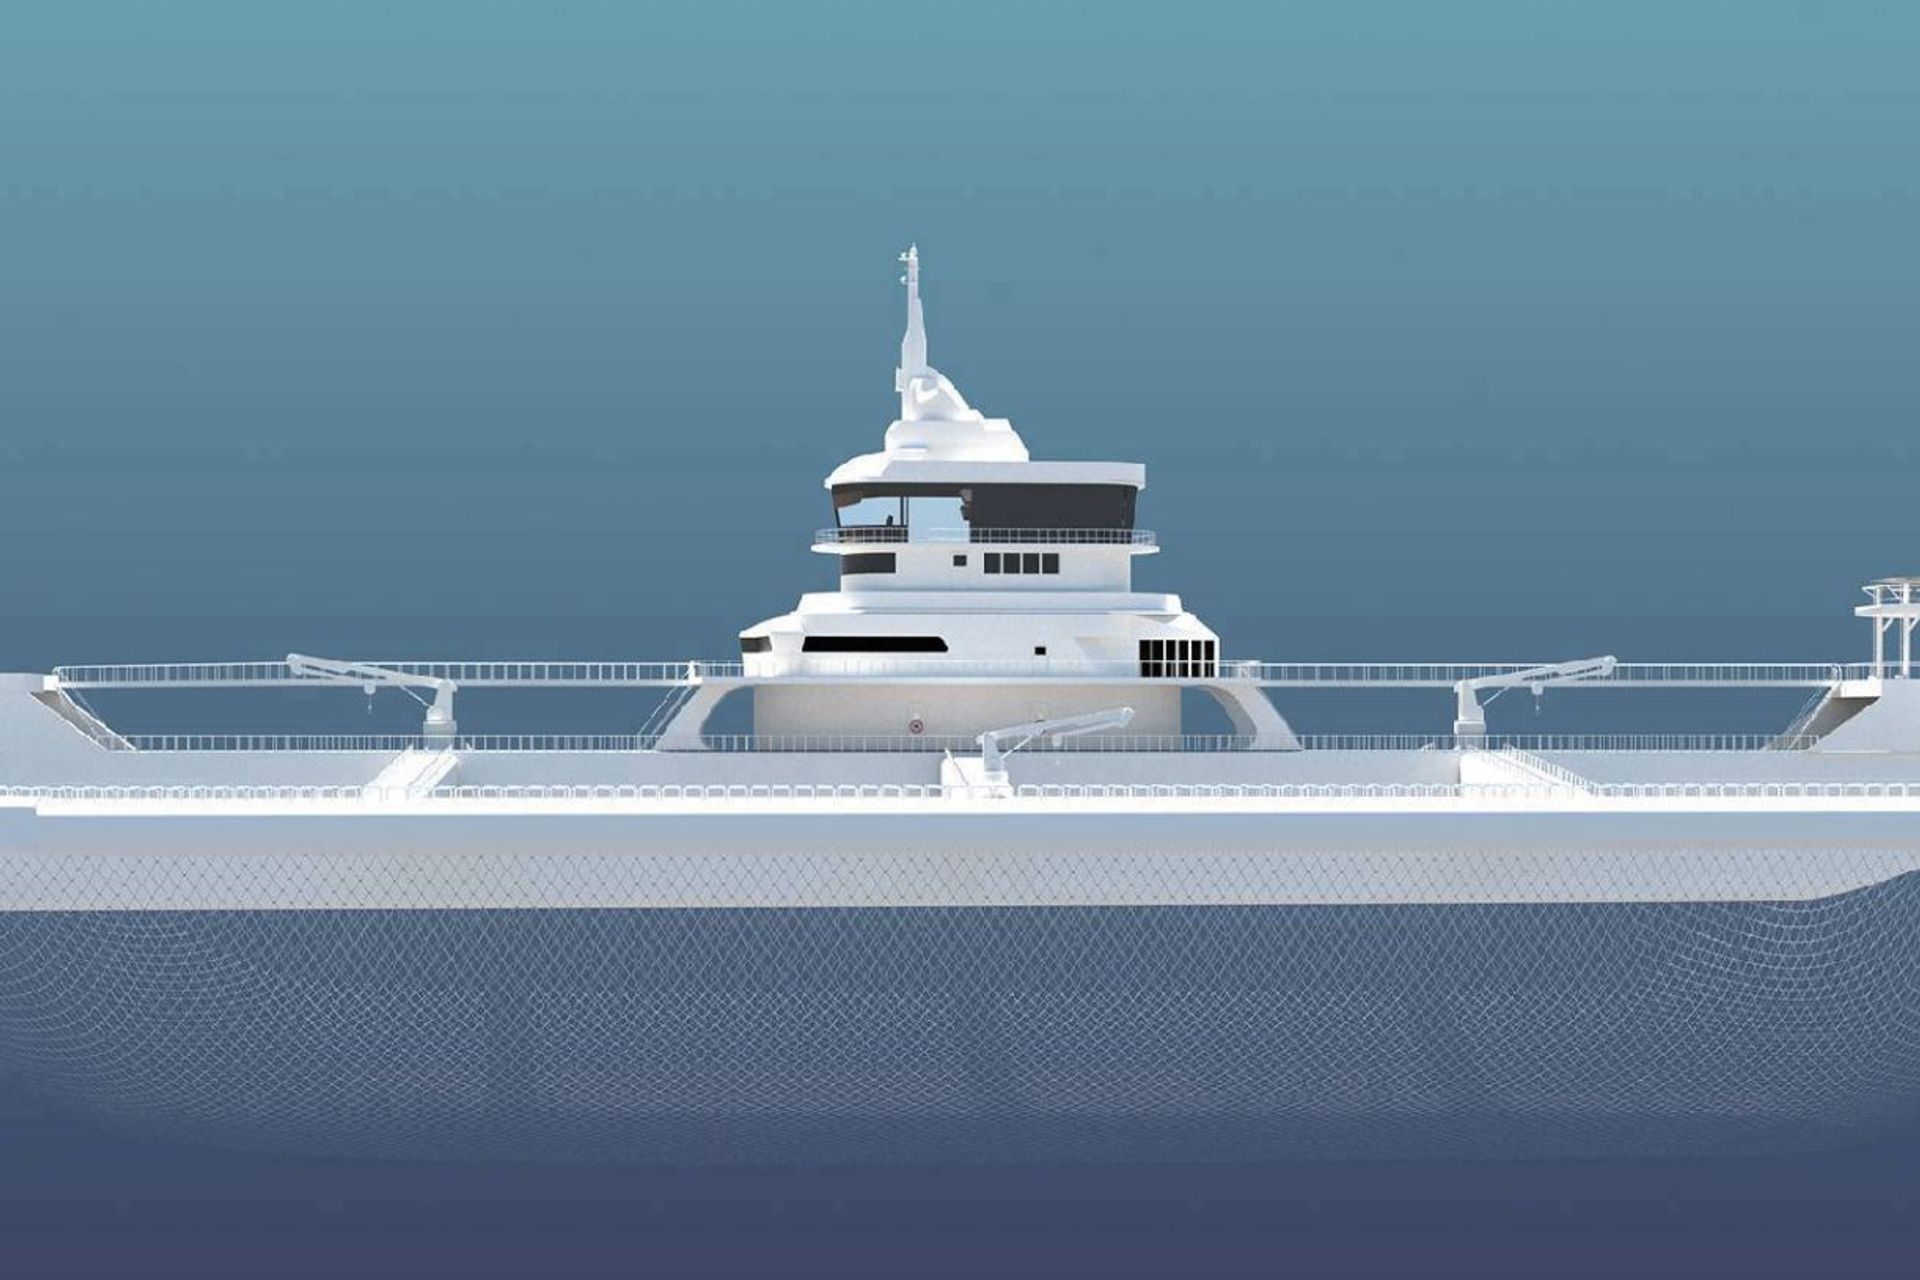 L’Ocean Ark è un trimarano a basse emissioni lungo 170 metri, assistito dall'intelligenza artificiale, progettato con recinti per pesce in rame autopulenti, capace di cercare le acque migliori